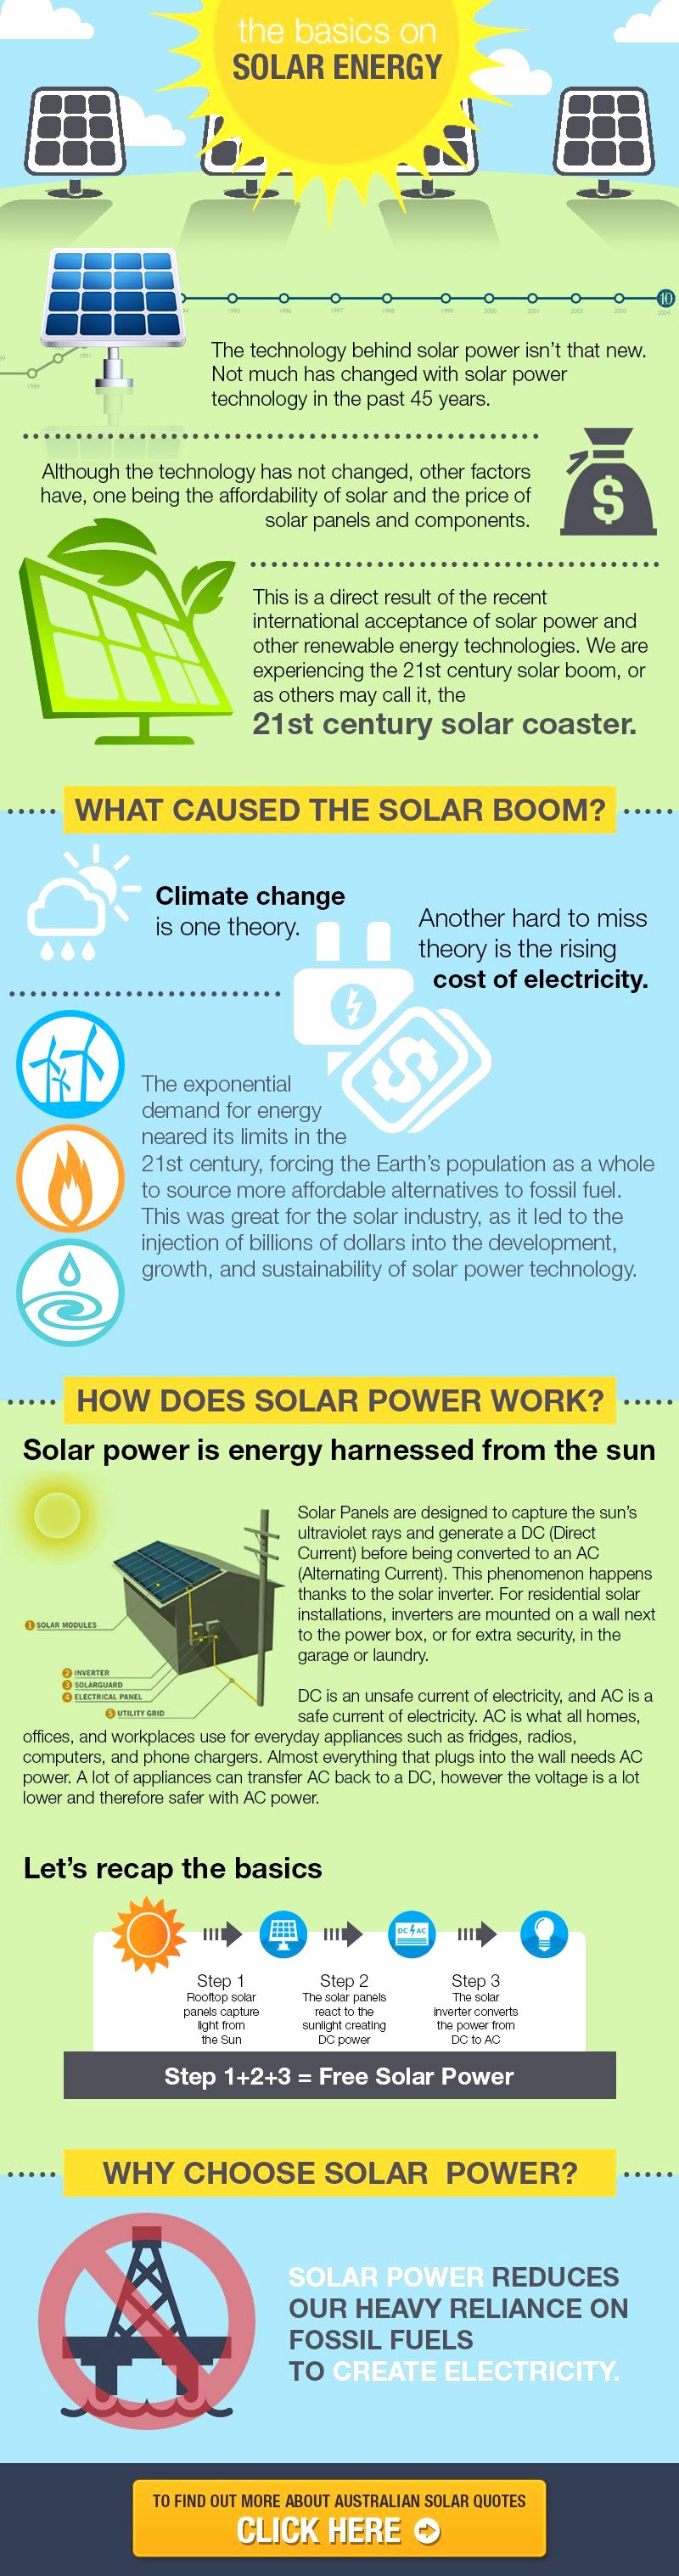 solar energy infographic bias